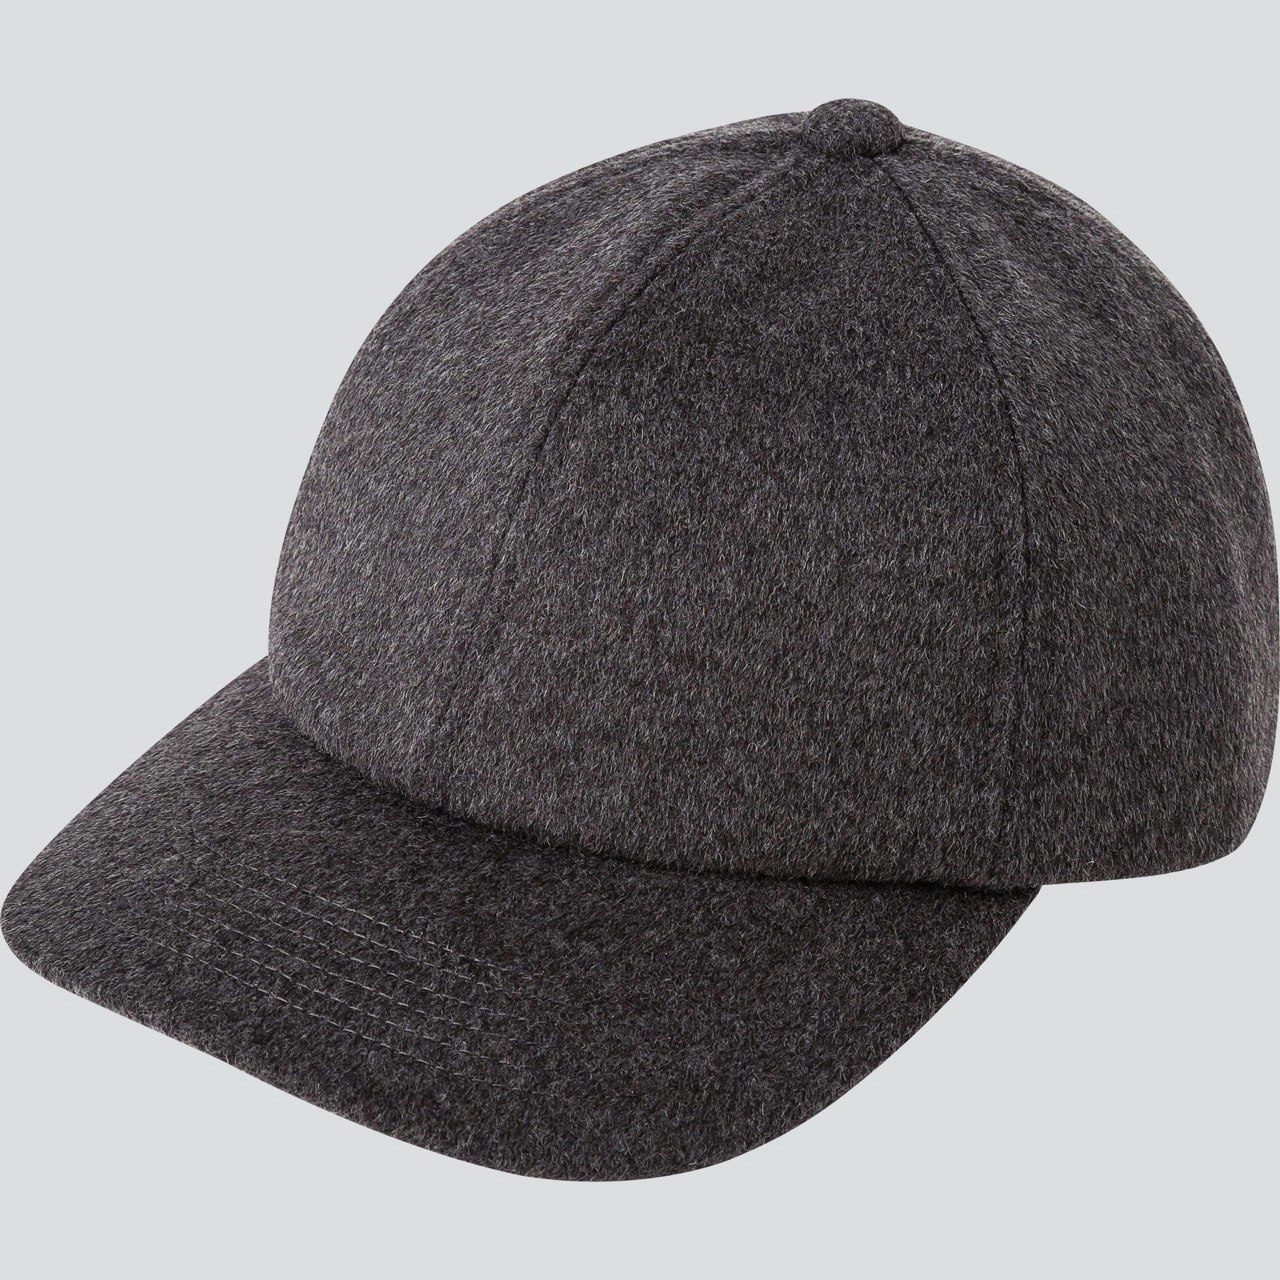 Uniqlo cashmere cap in grey